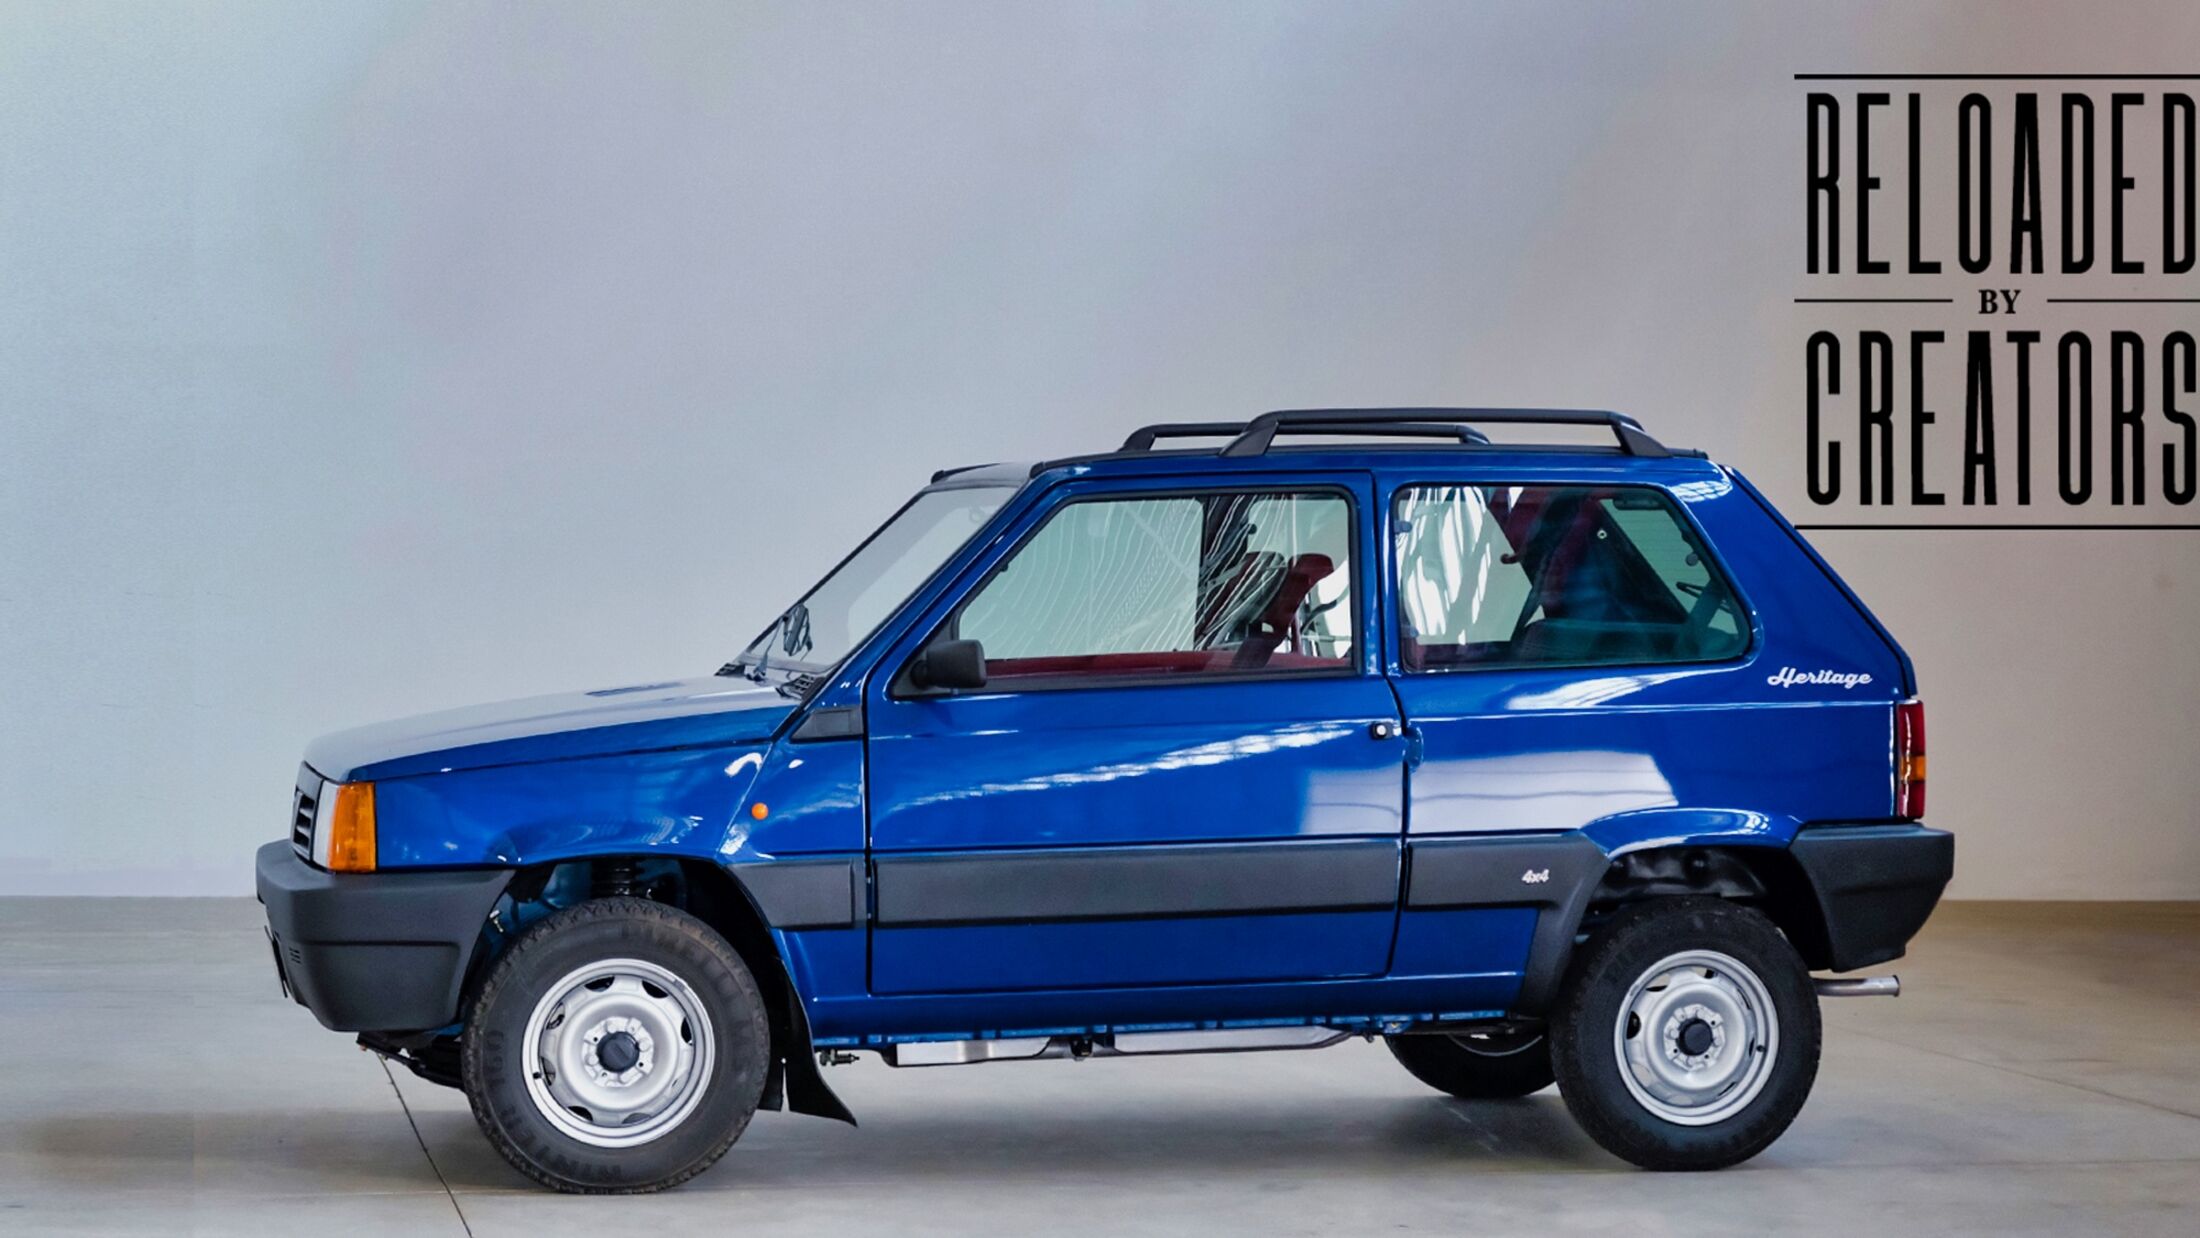 https://imgr1.auto-motor-und-sport.de/Fiat-Panda-4x4-Heritage-Reloaded-By-Creators-2023-jsonLd16x9-e5bd26b9-2057470.jpg